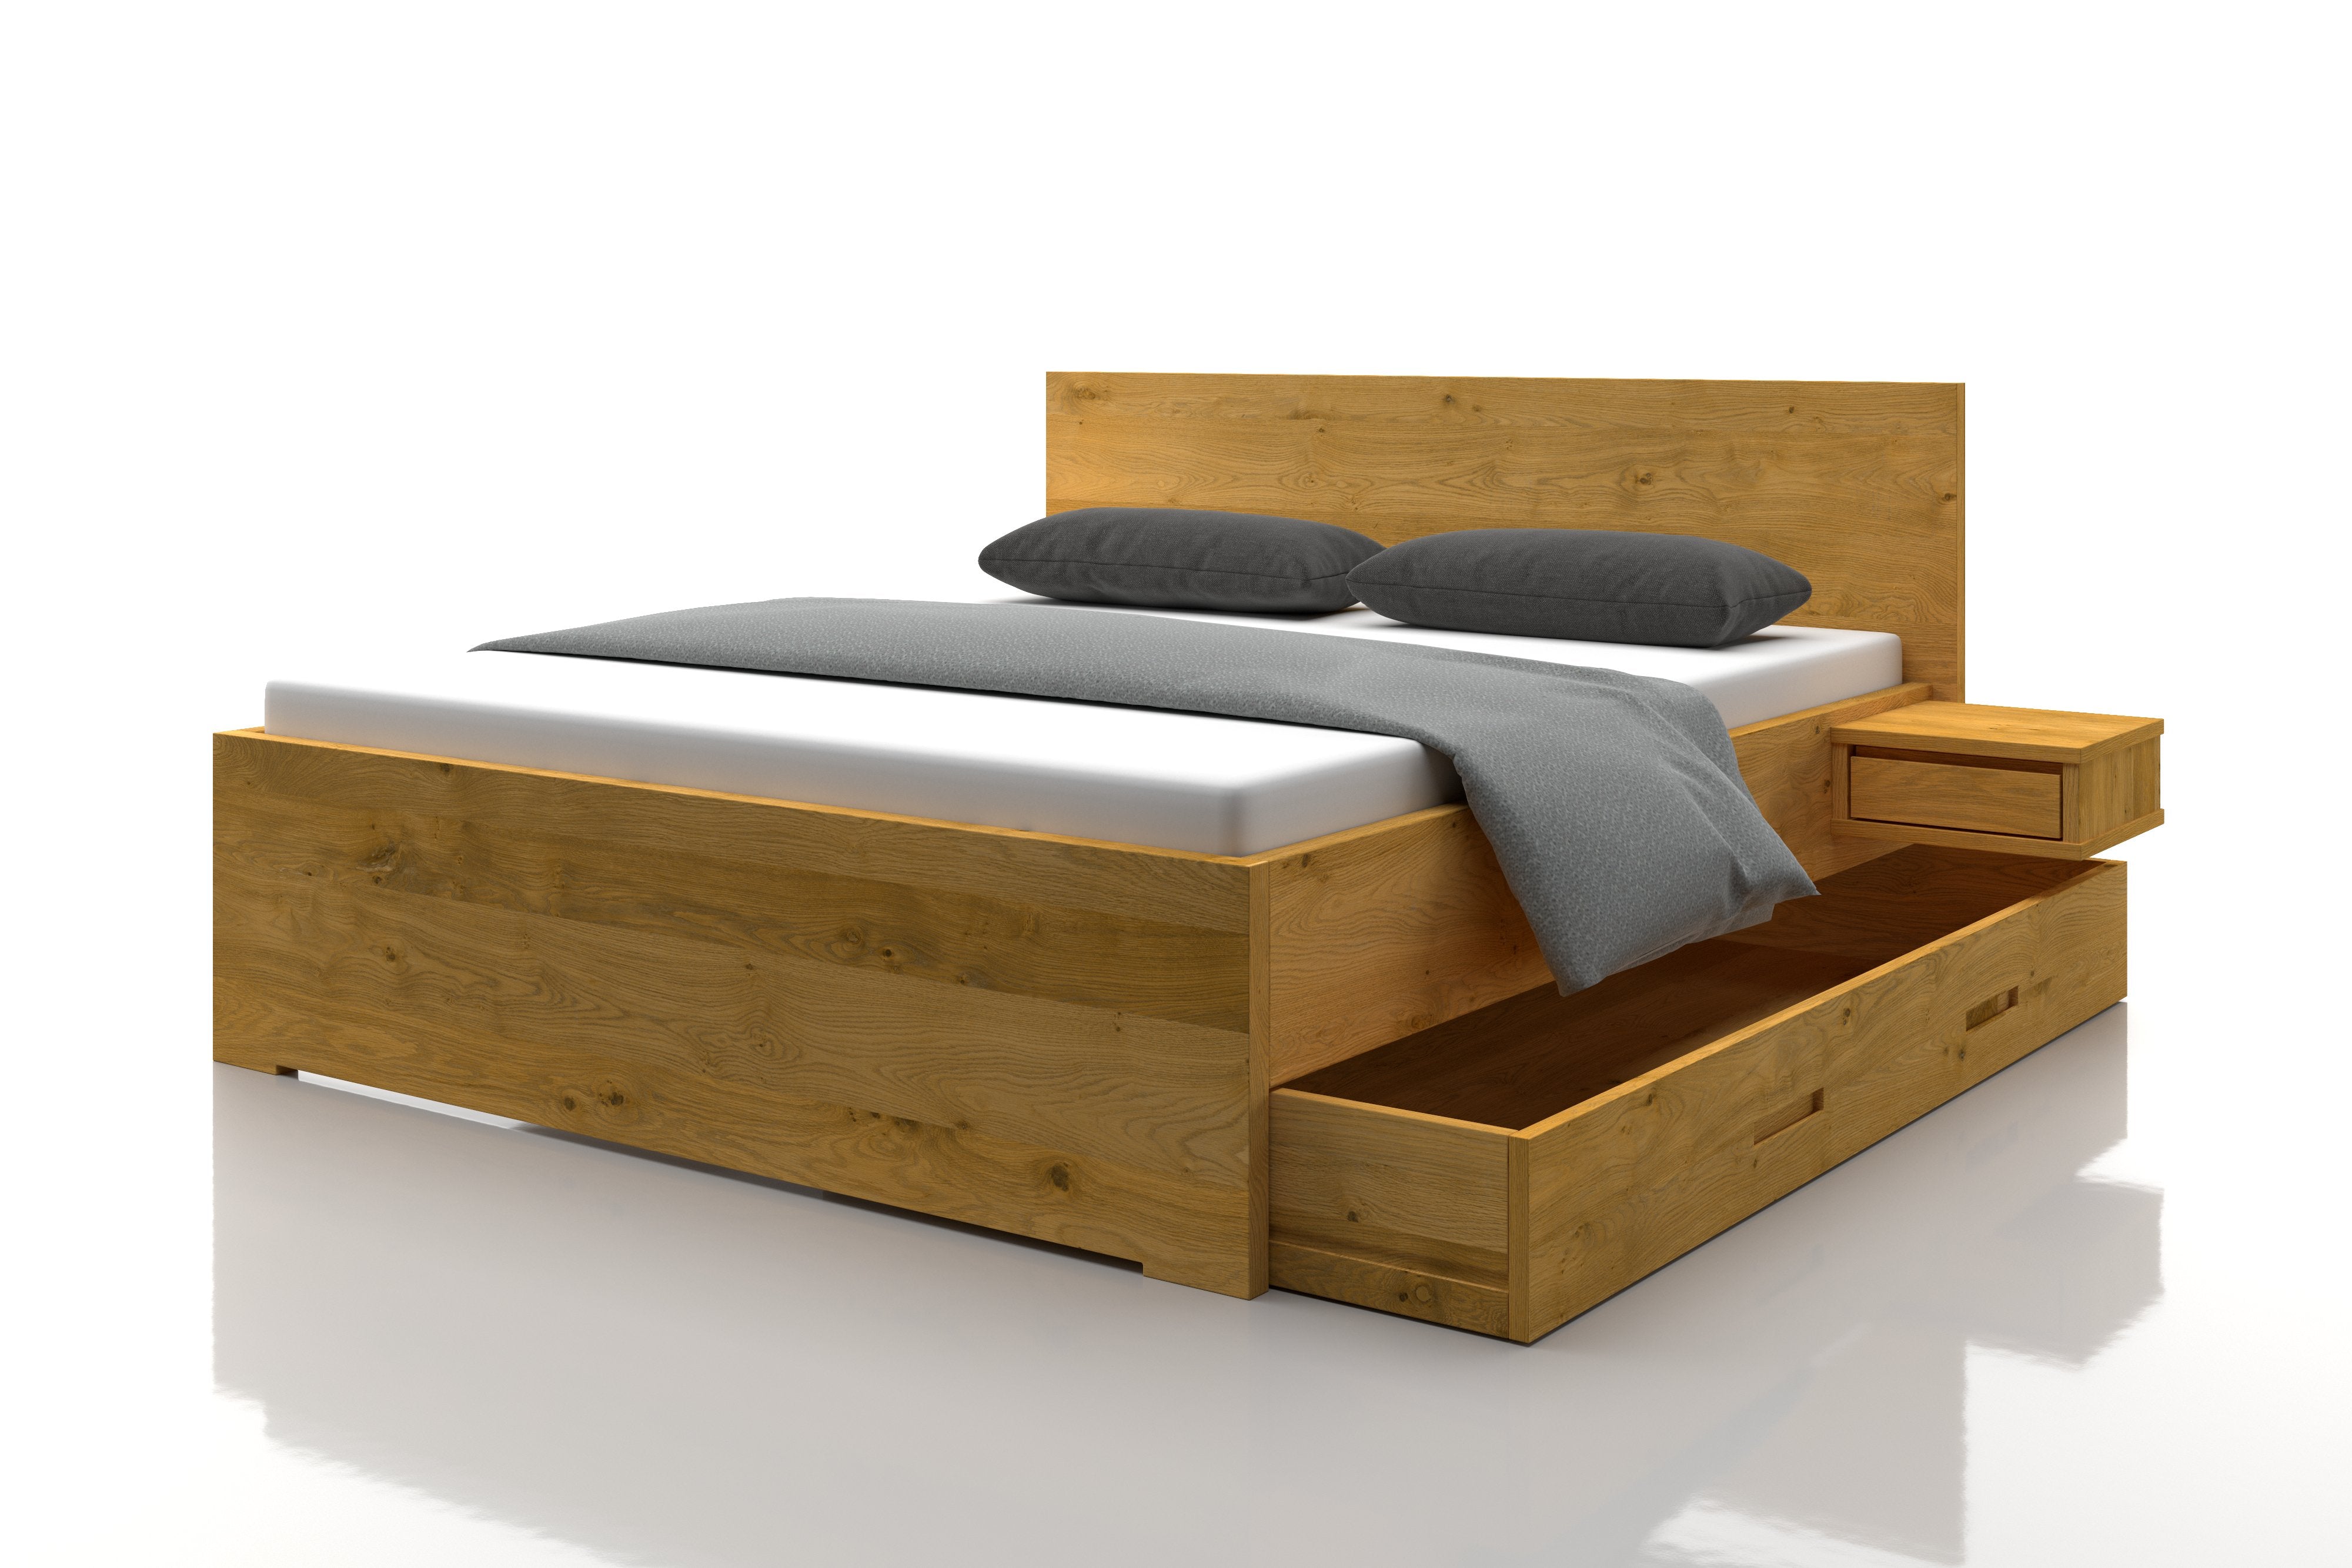 Asteichenbett Mia mit praktischen Schubladen unter dem Bett